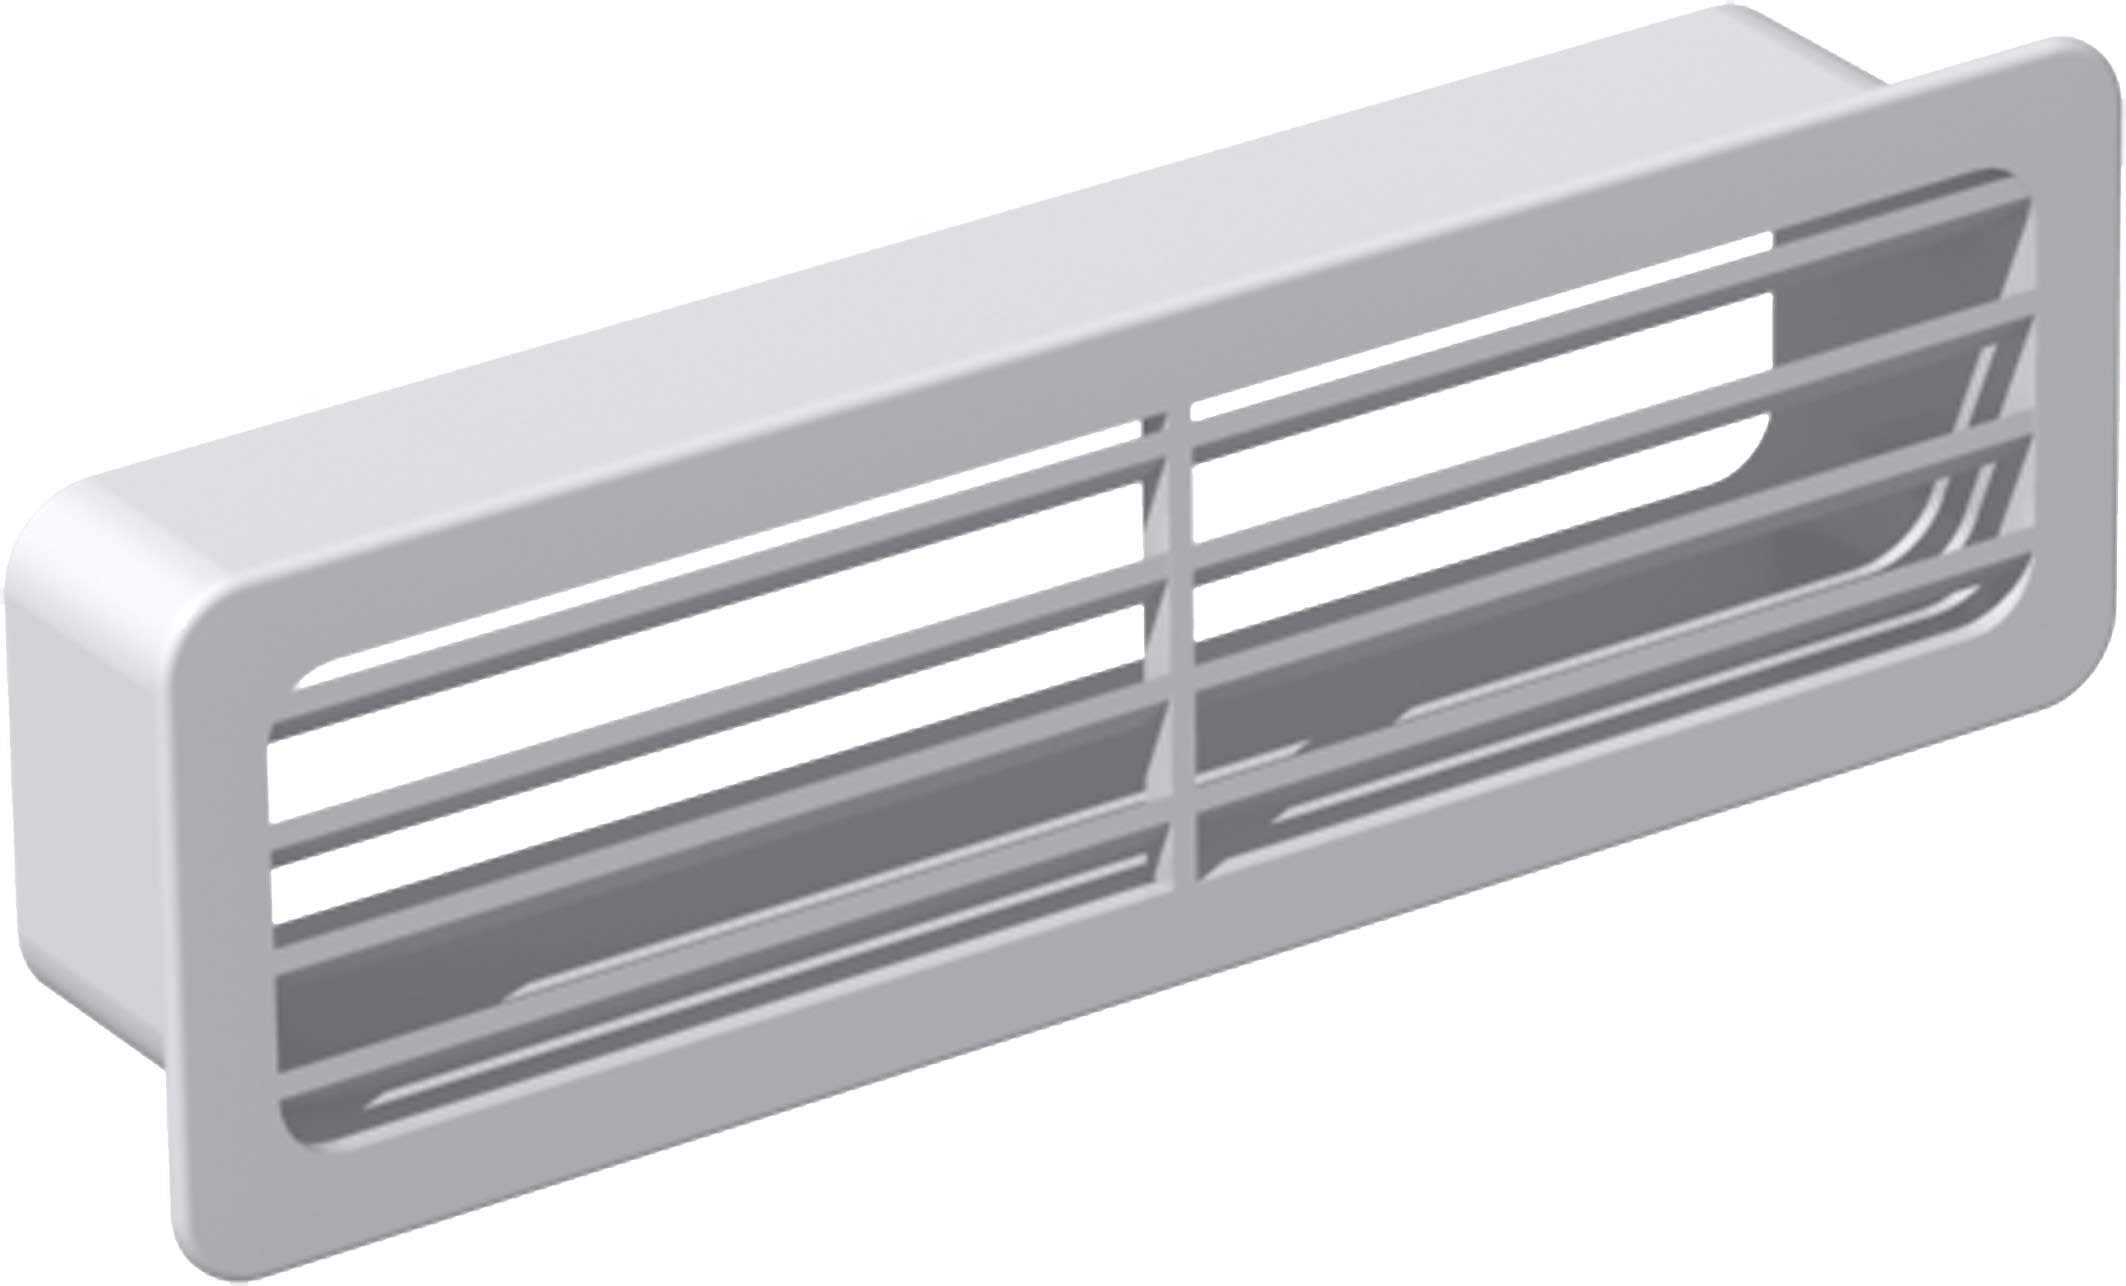 S&P - Grille extérieure rectangulaire PVC rigide, 55 x 220 mm, gamme TUBPLA